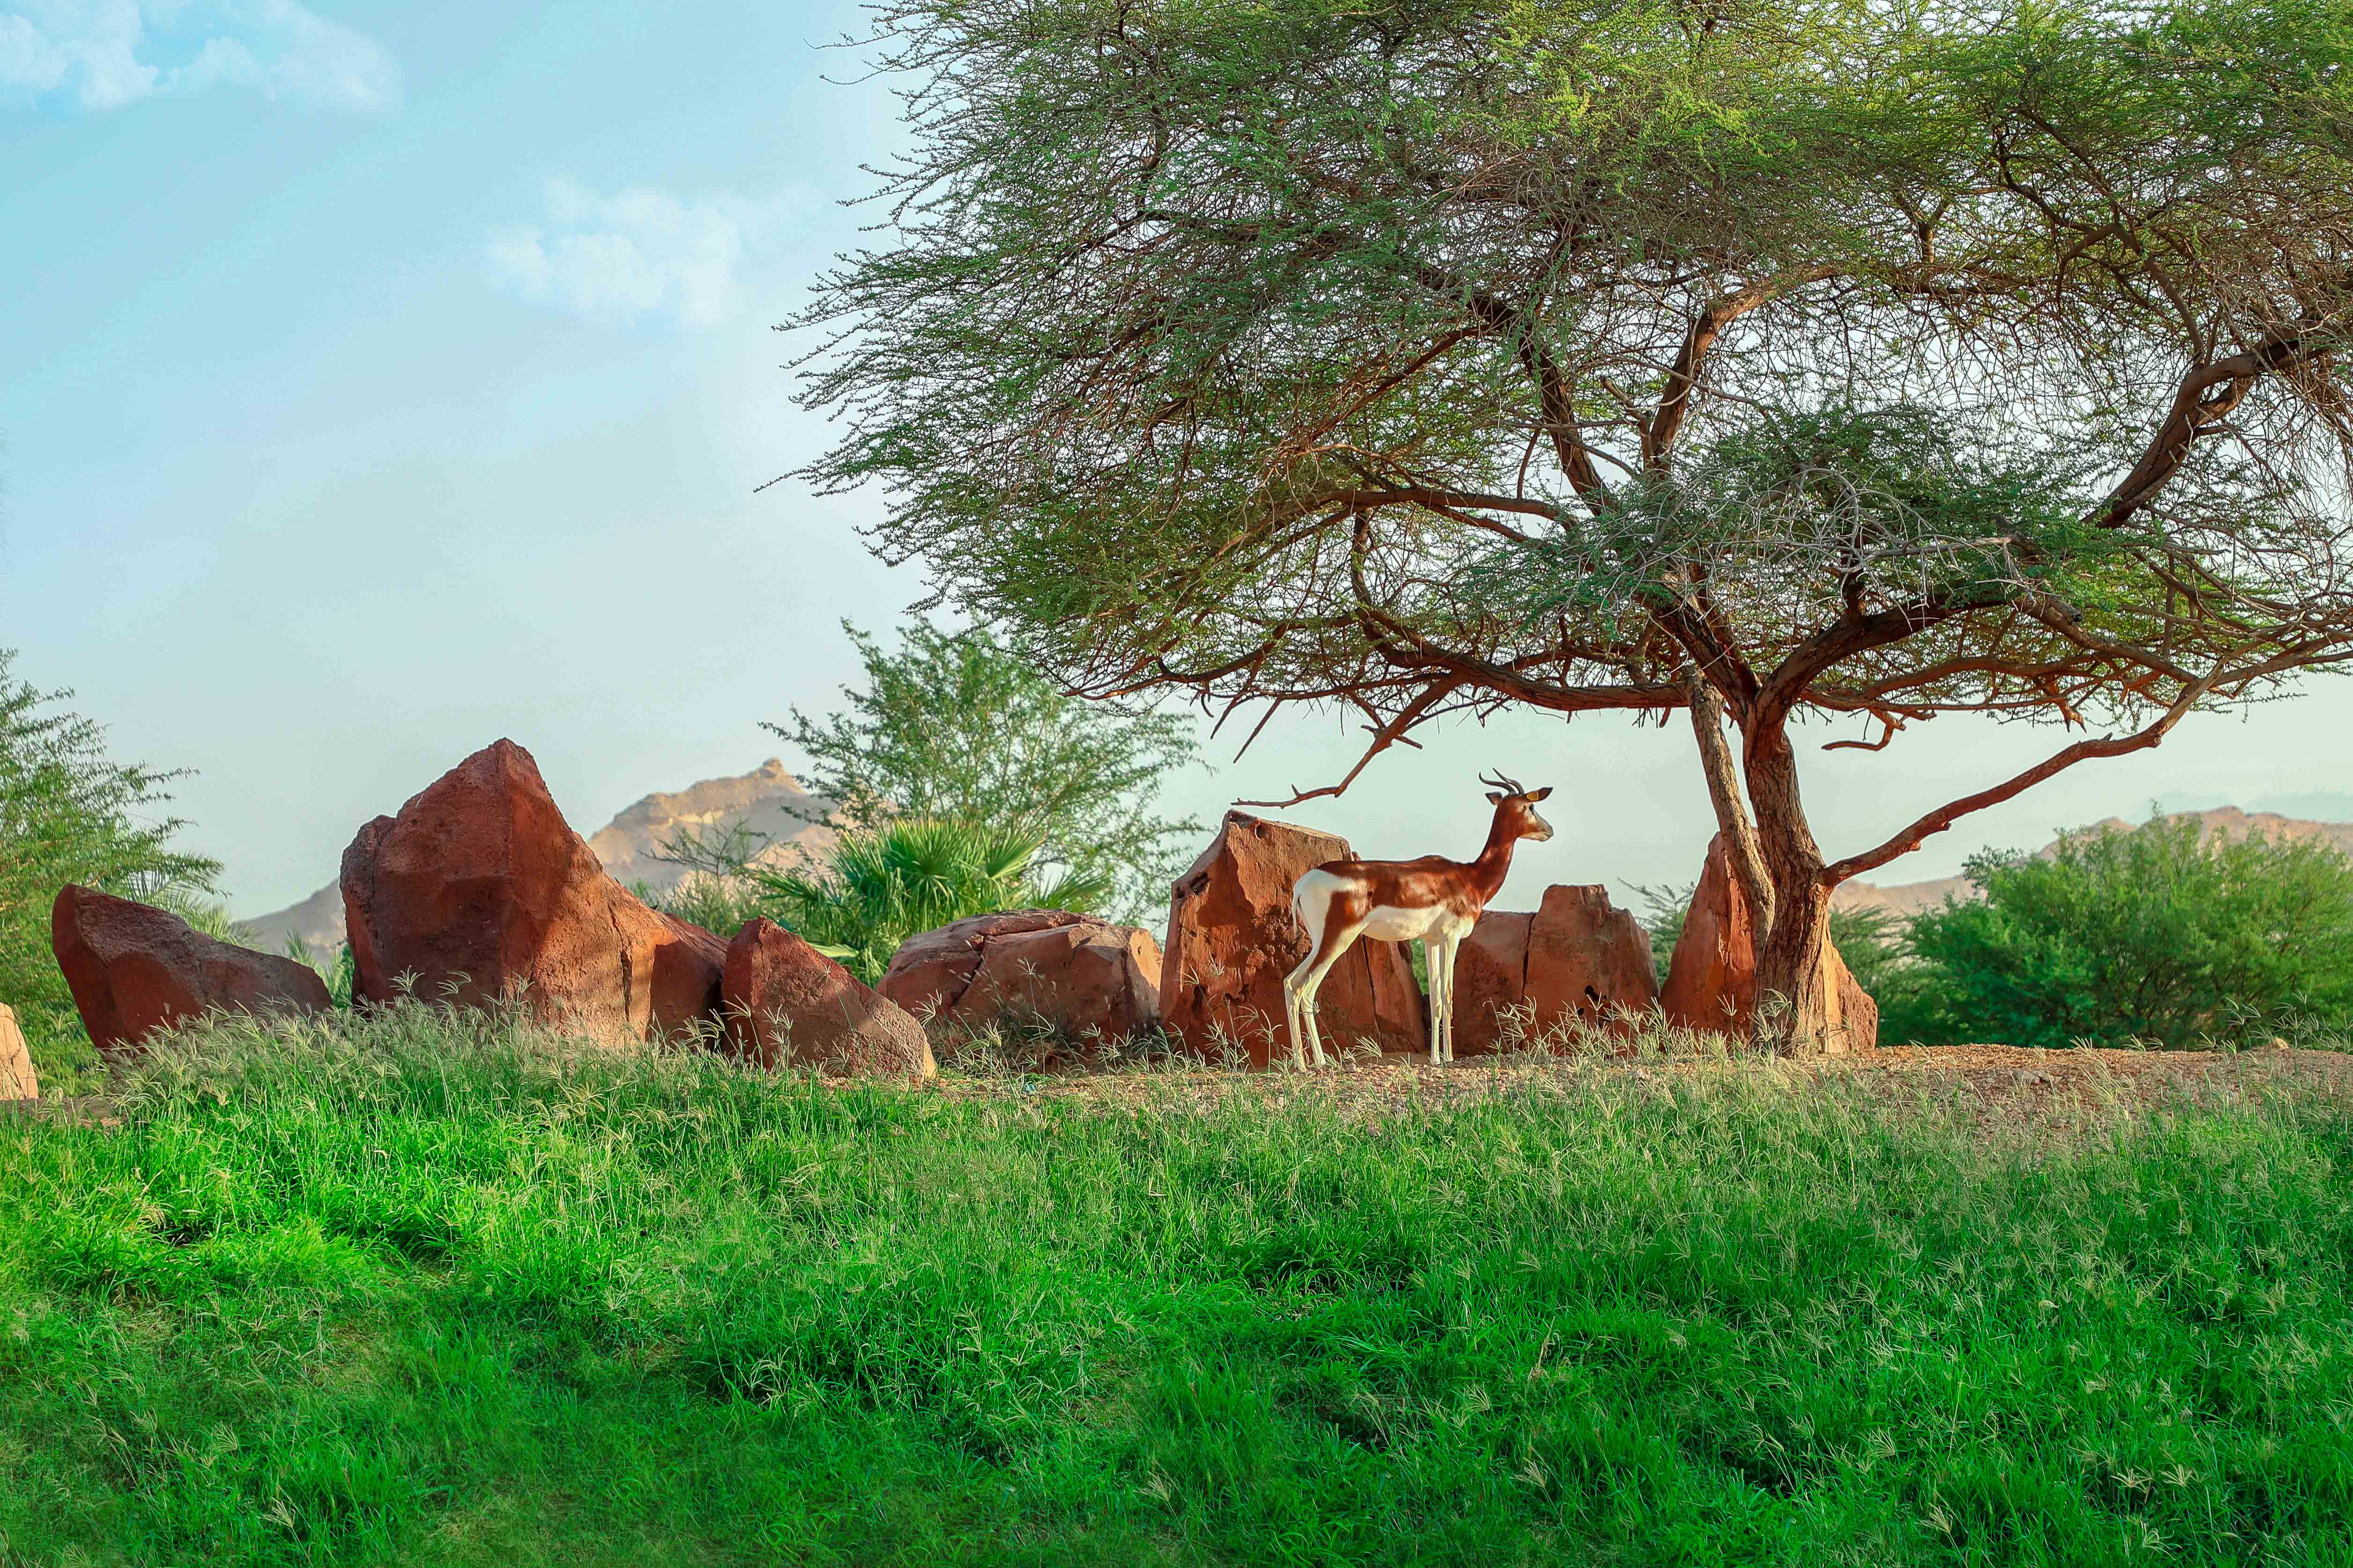 ‫حديقة الحيوانات بالعين تشارك في وضع استراتيجية صون غزال الداما الأفريقي‬